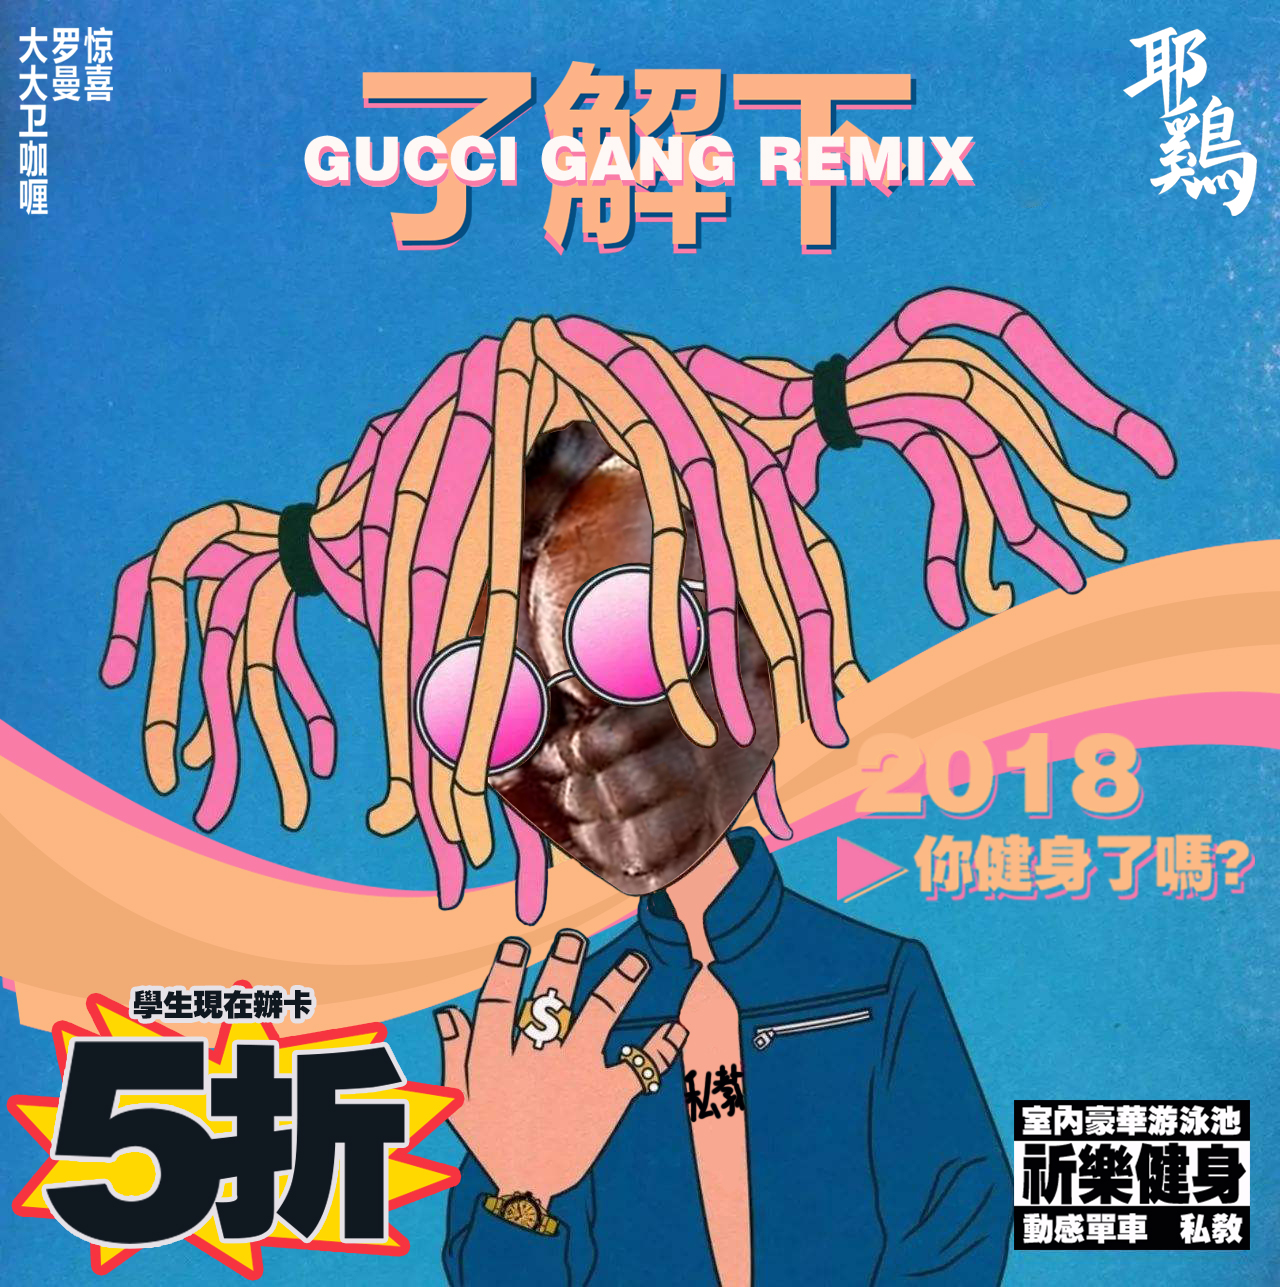 Lil Pump  liao jie xia Gucci Gang Remix